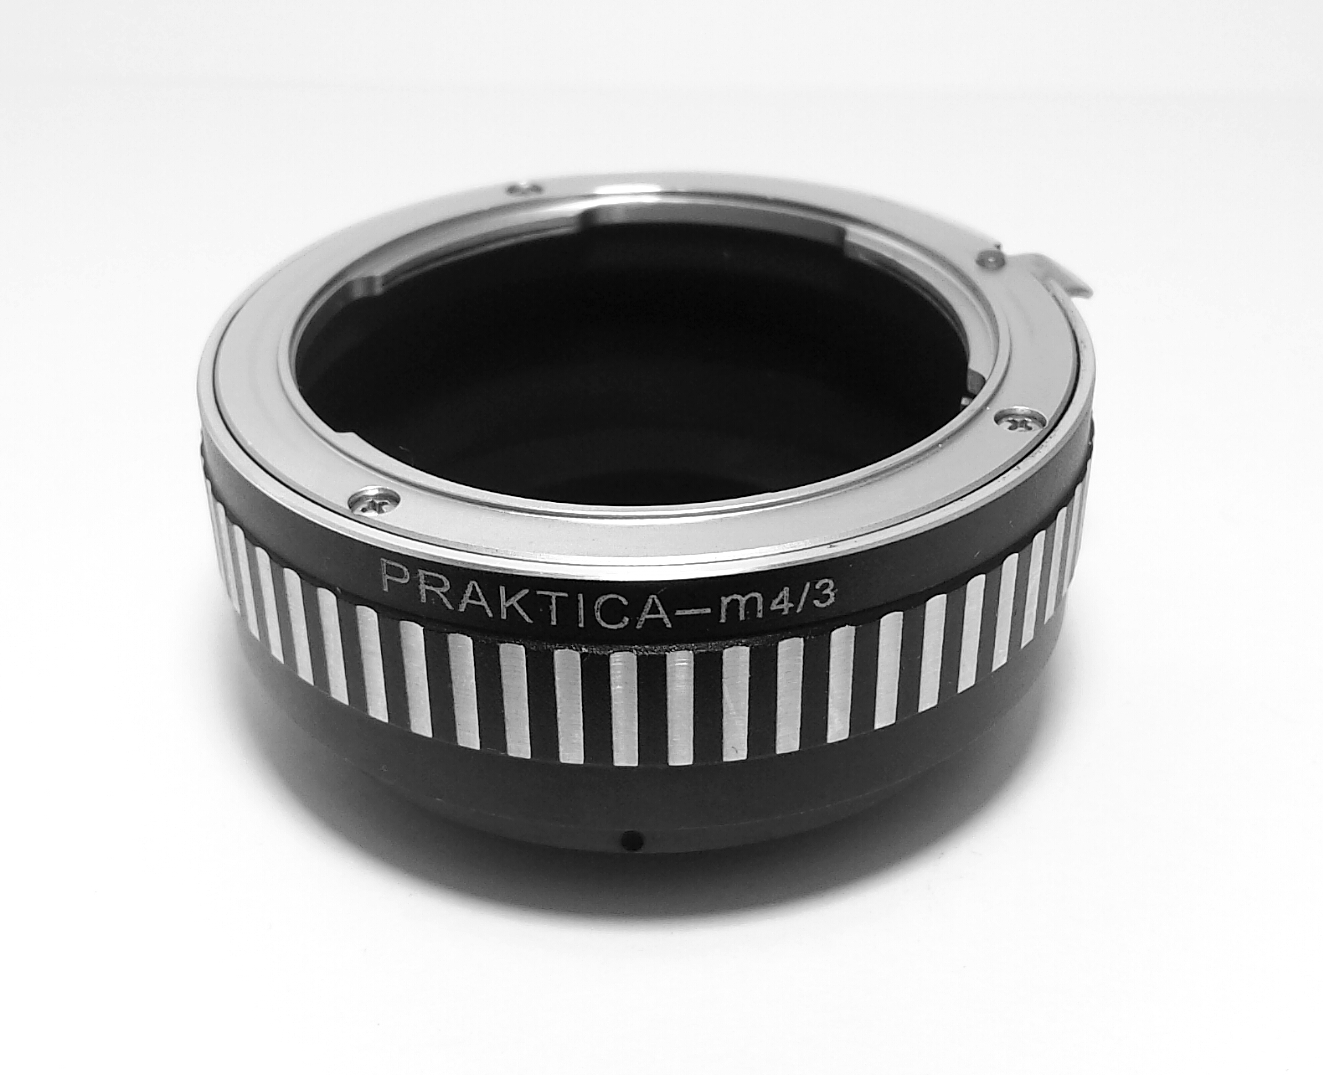 Praktica PB Lens to Micro 4/3 Camera Body Adapter